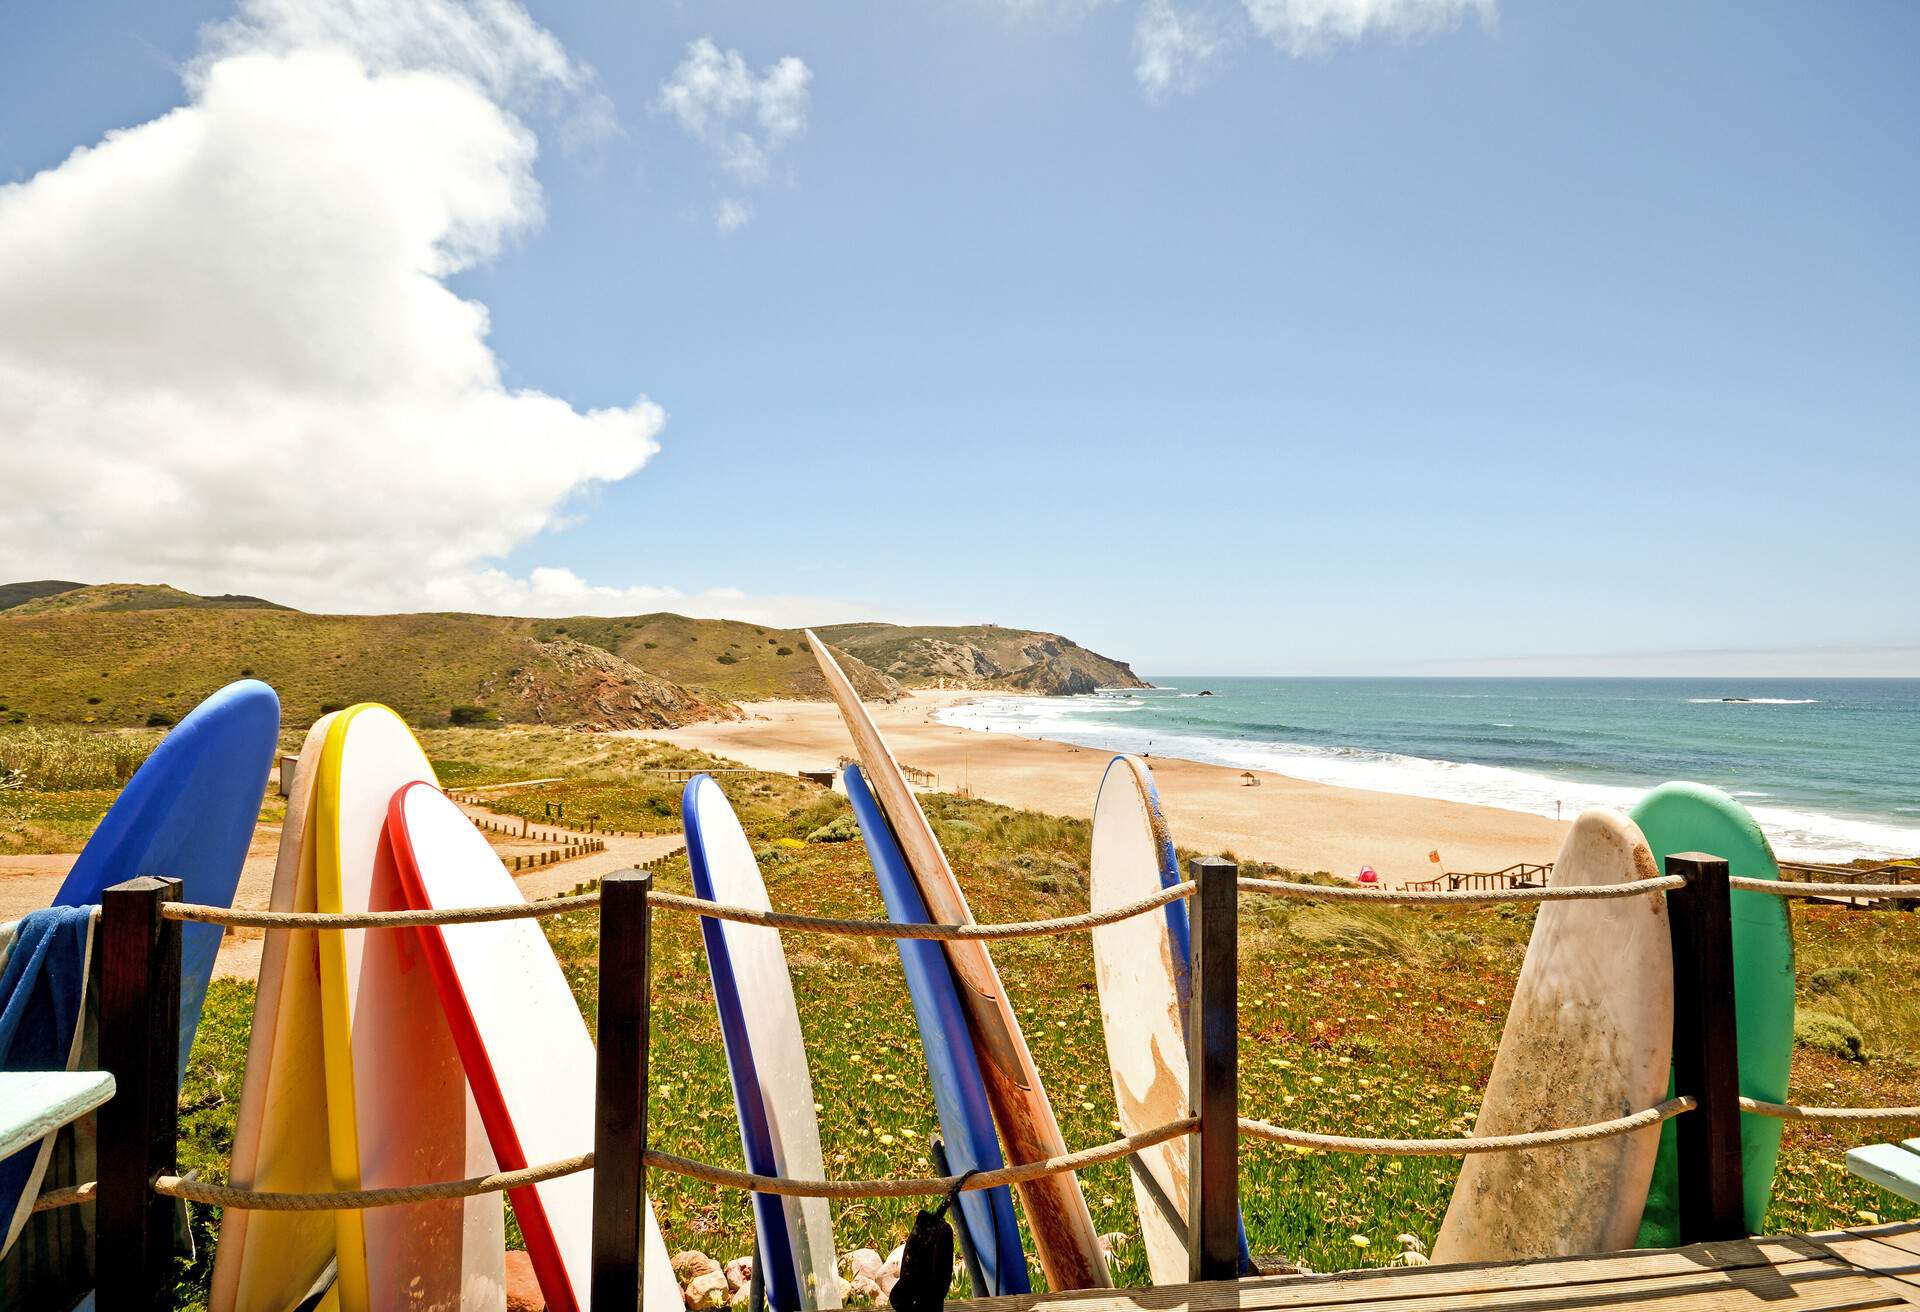 Praia do Amado, Beach and Surfer spot near Carrapateira, Algarve Portugal